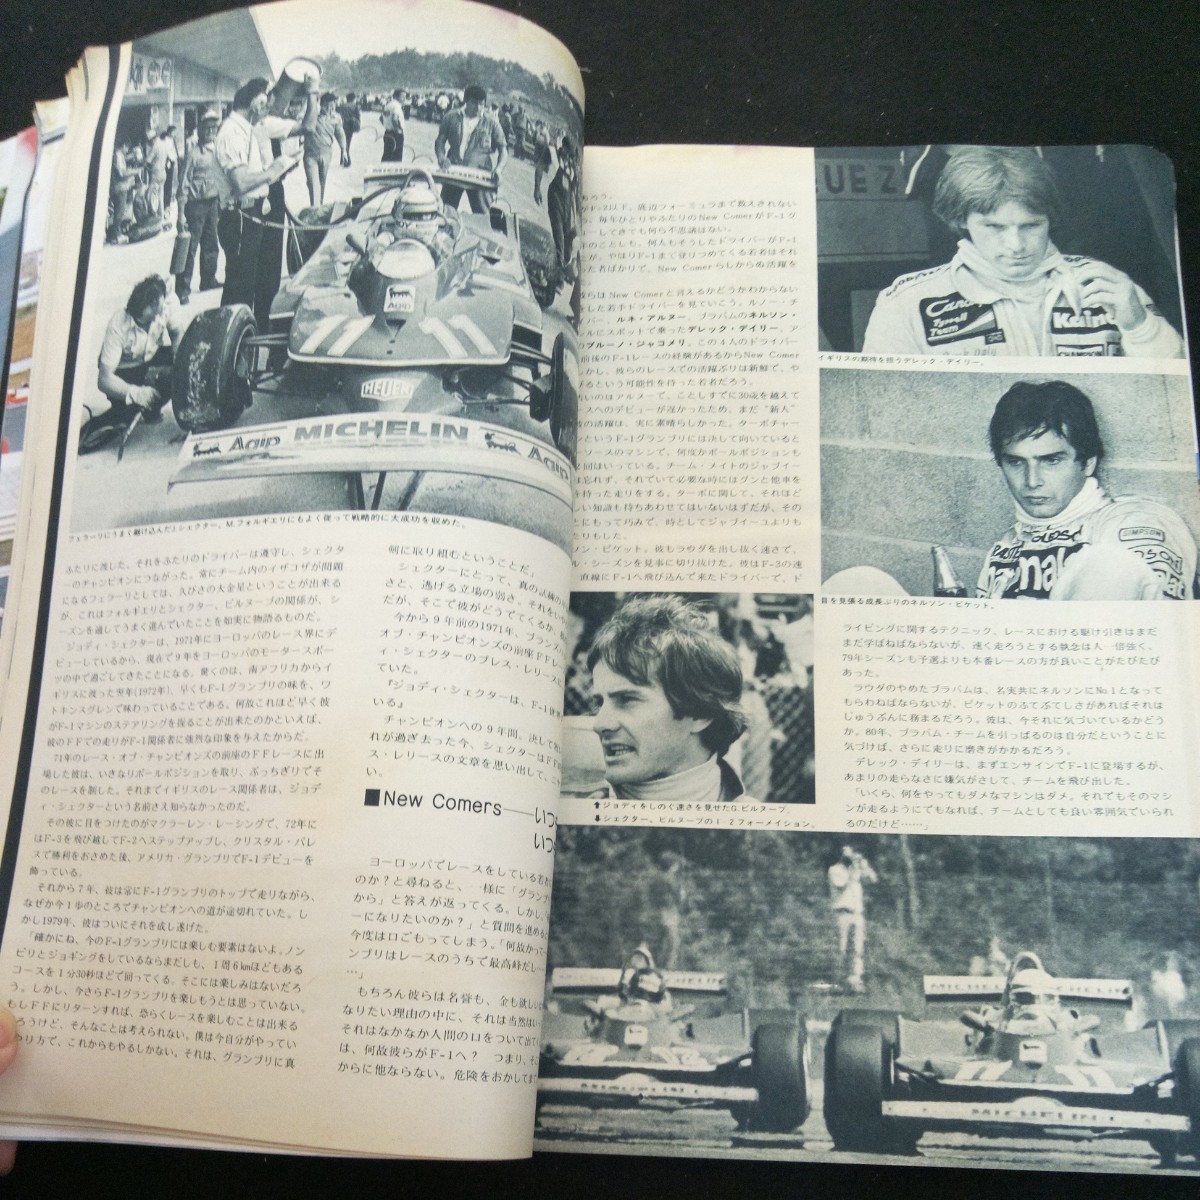 c-337 オートスポーツ 1980年発行 三栄書房 特集:波乱のF-1グランプリ1979レビュー 最新F-2メカニズム チャンピオン・マシン792 など※3 _画像5